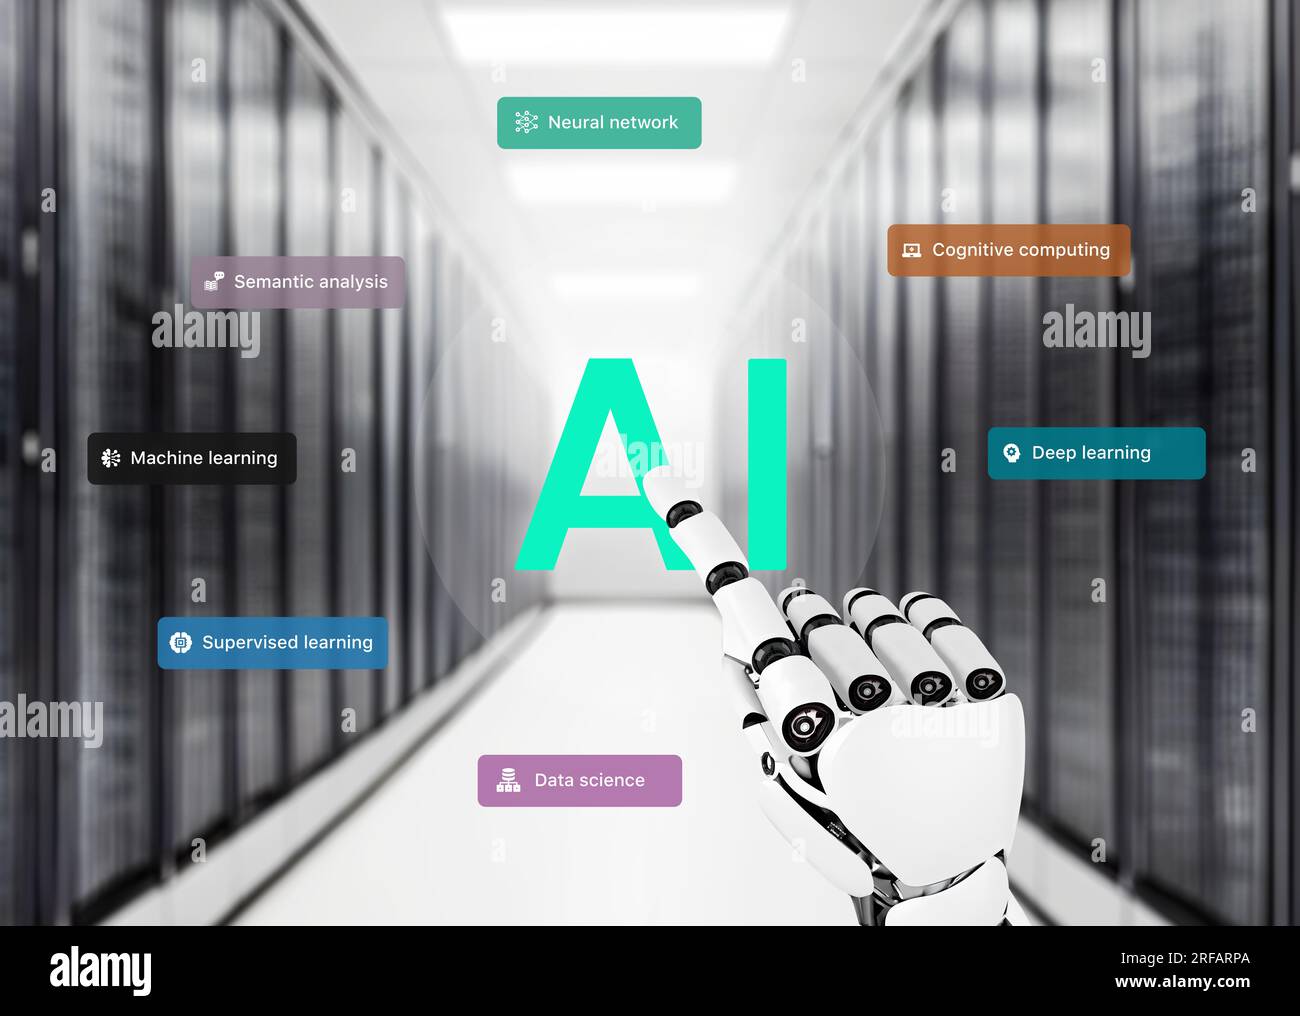 Handberührung durch Roboter mit künstlicher Intelligenz im Computer, Serverraum mit KI-Begriffen, die herumfliegen. Konzept der Entwicklung von künstlicher Intelligenz und Machi Stockfoto